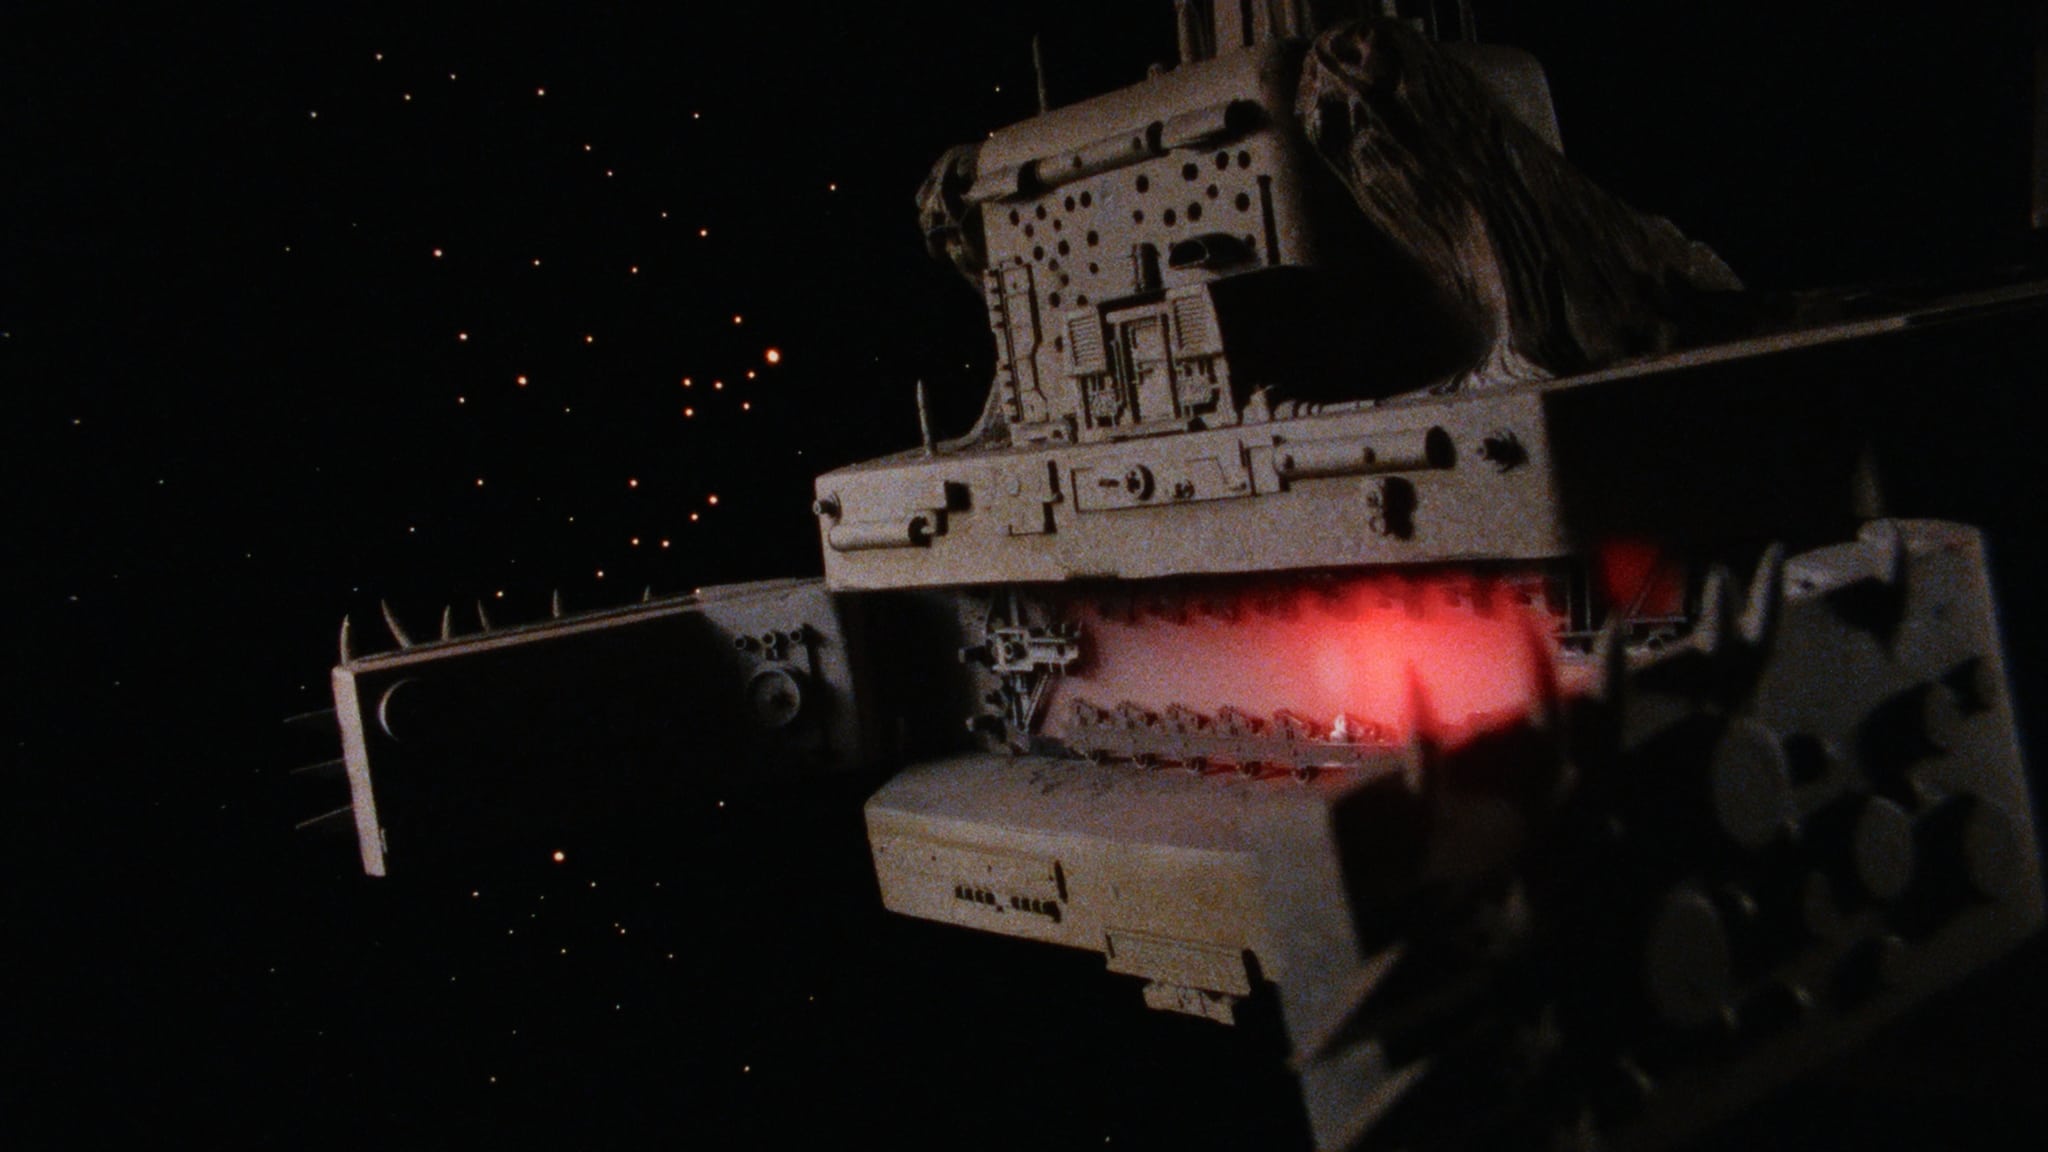 Galaxy Destroyer (1986)